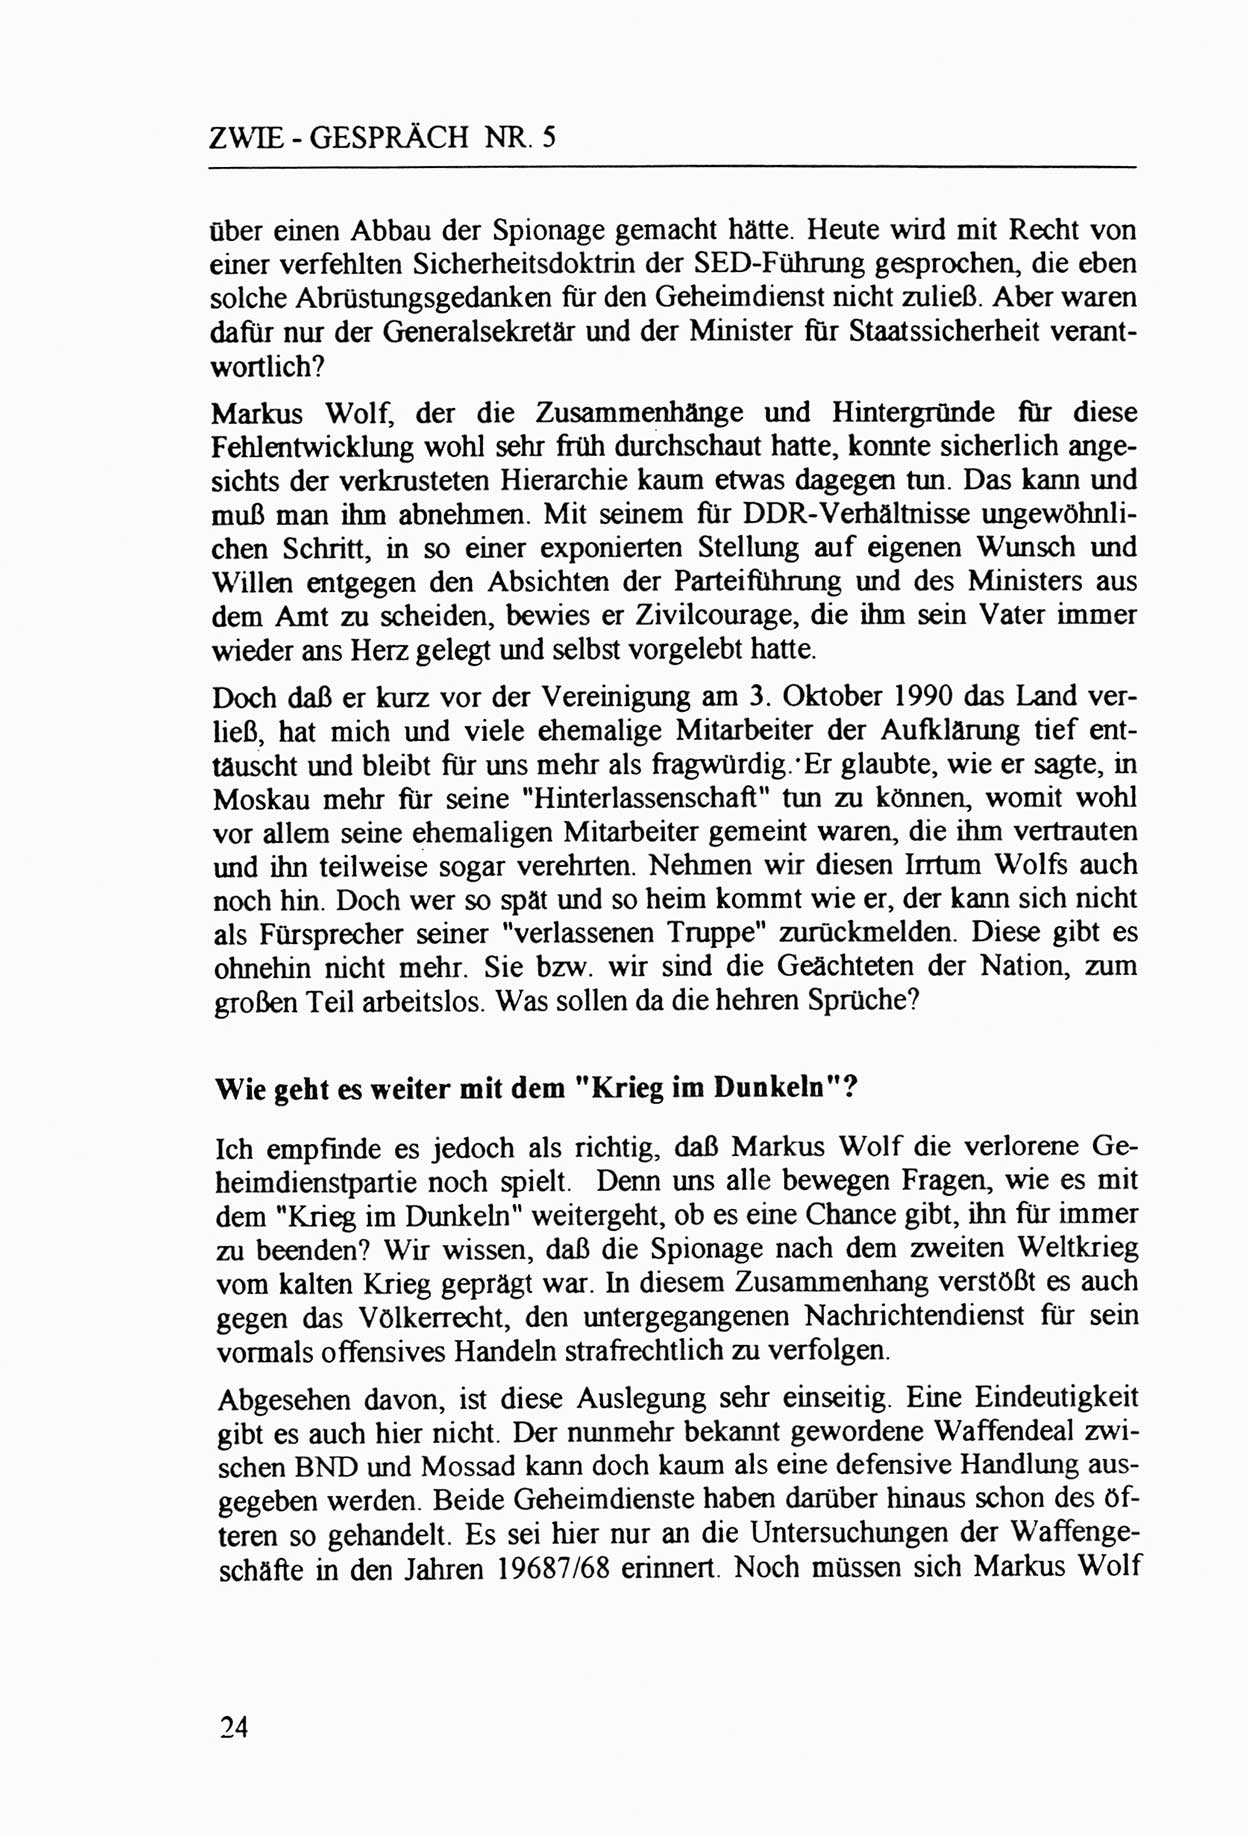 Zwie-Gespräch, Beiträge zur Aufarbeitung der Staatssicherheits-Vergangenheit [Deutsche Demokratische Republik (DDR)], Ausgabe Nr. 5, Berlin 1991, Seite 24 (Zwie-Gespr. Ausg. 5 1991, S. 24)